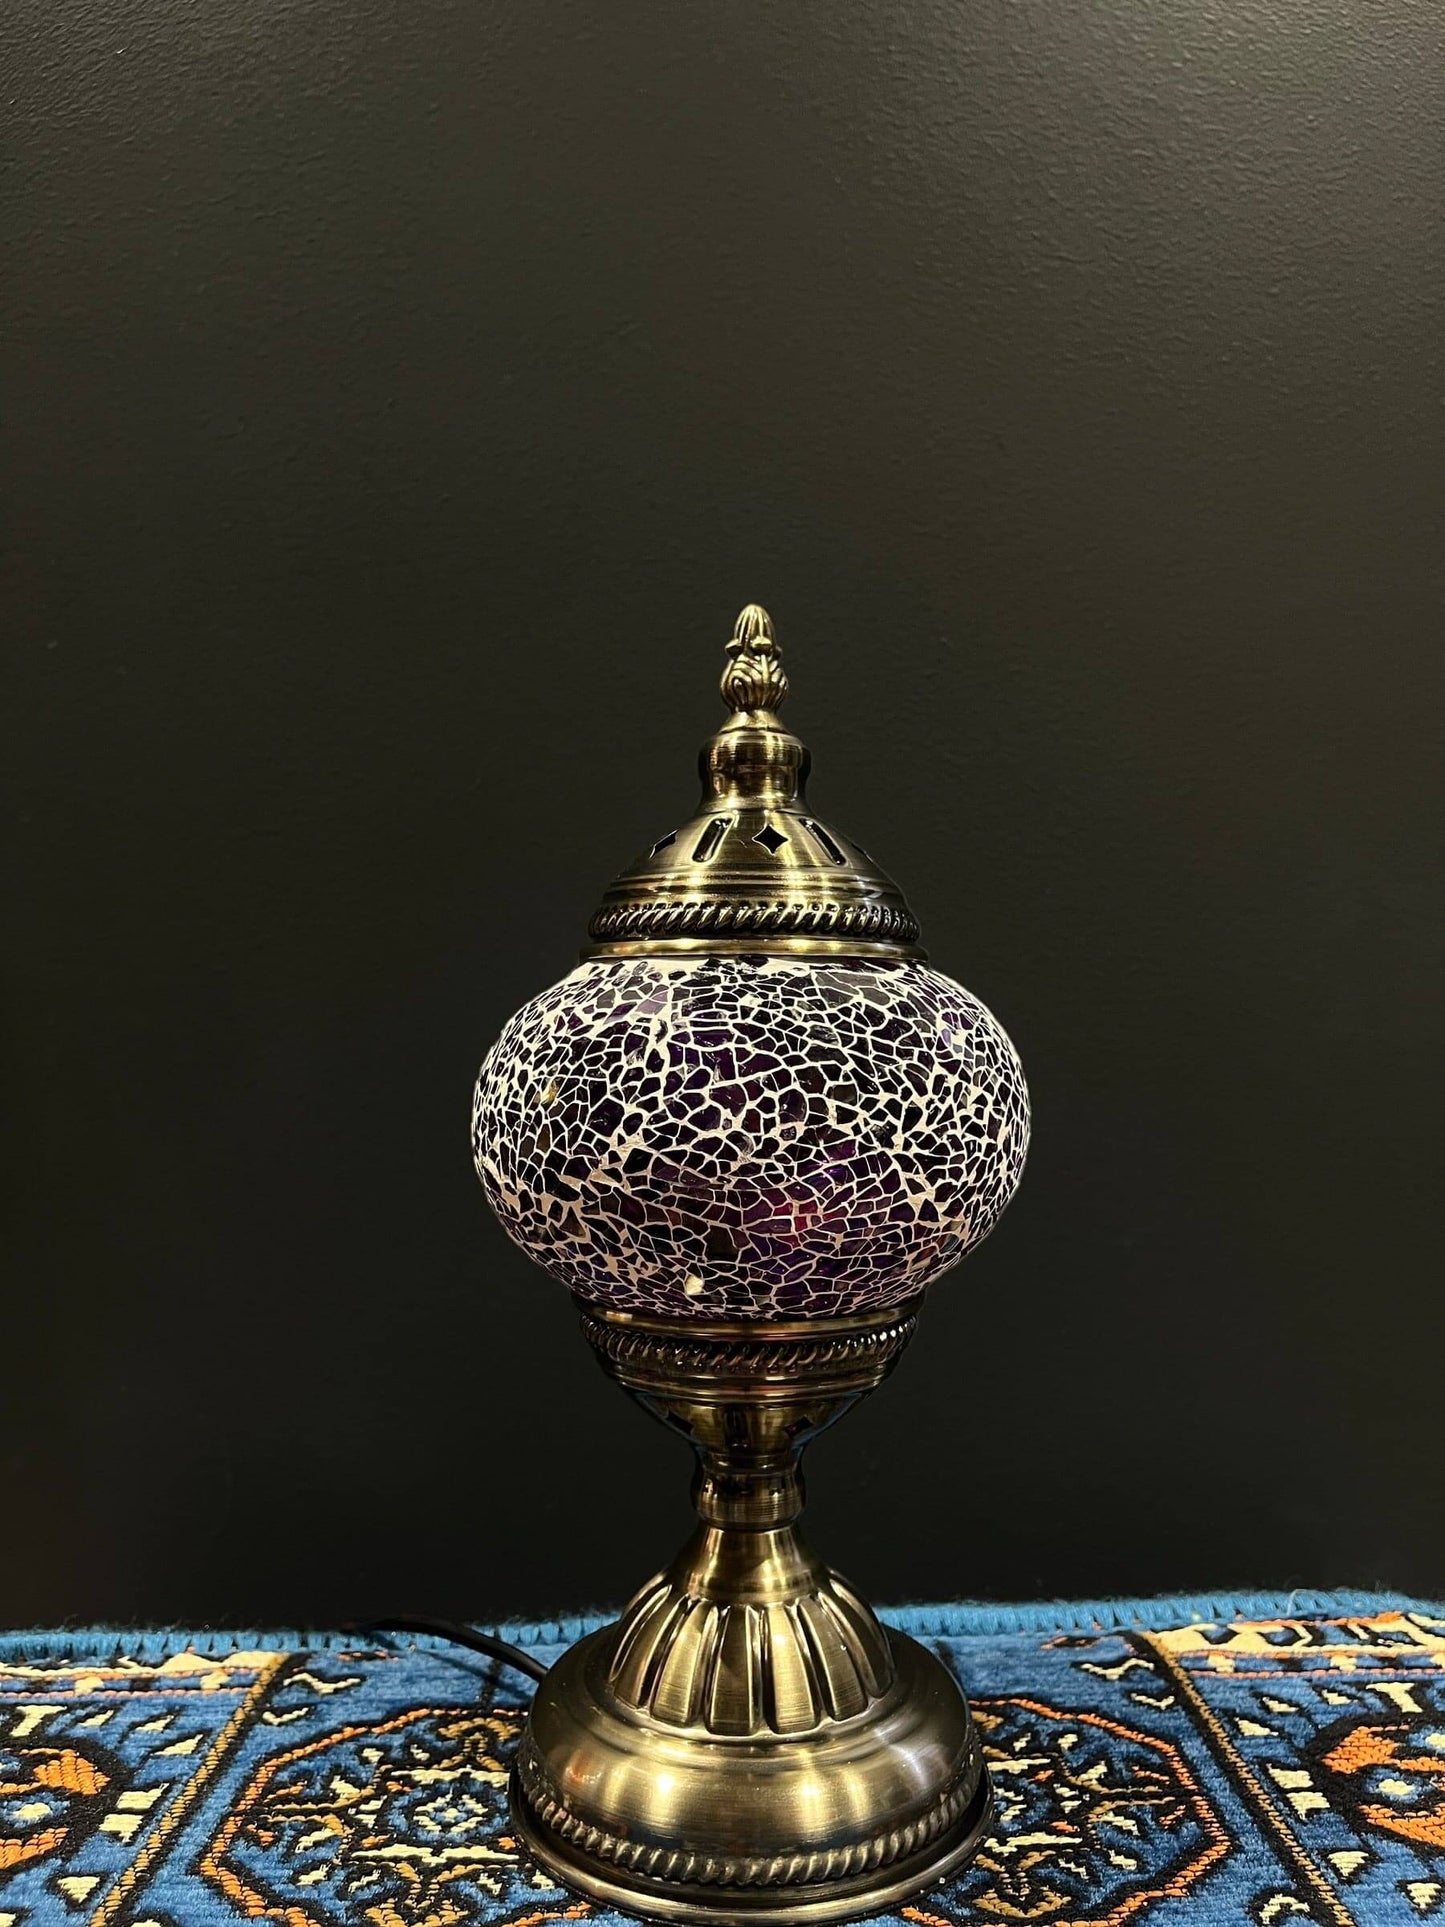 Mosaic Table Lamp Purple Crackle$59.00Bazaar G Rugs N Gifts